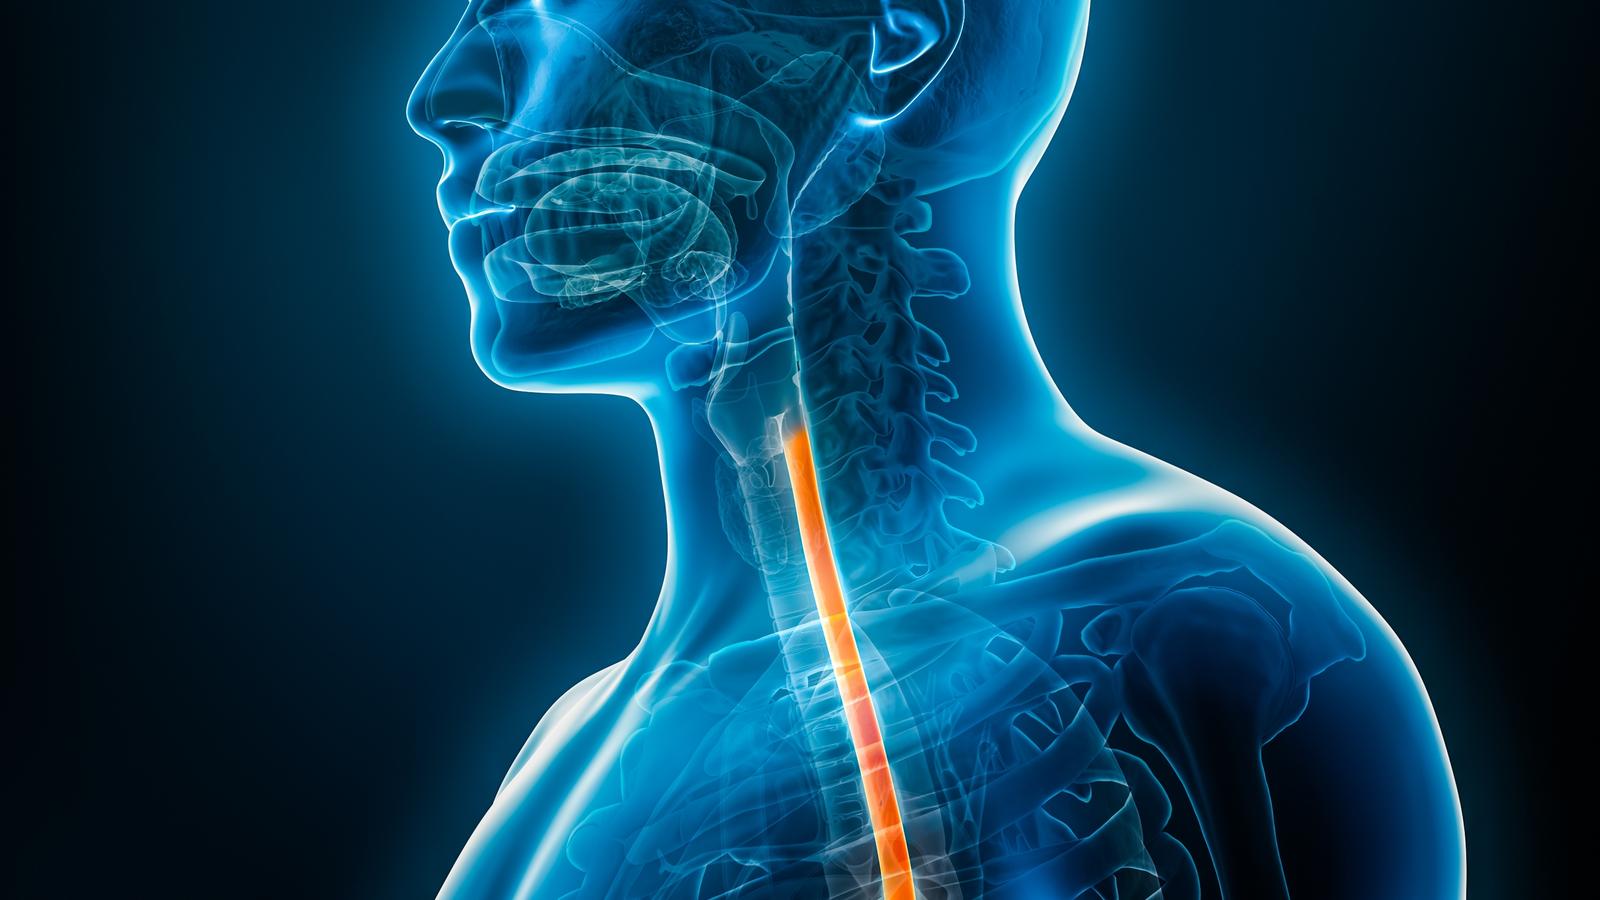 Menschliche Grafik von einem Röntgen mit Speisröhre gelb markiert